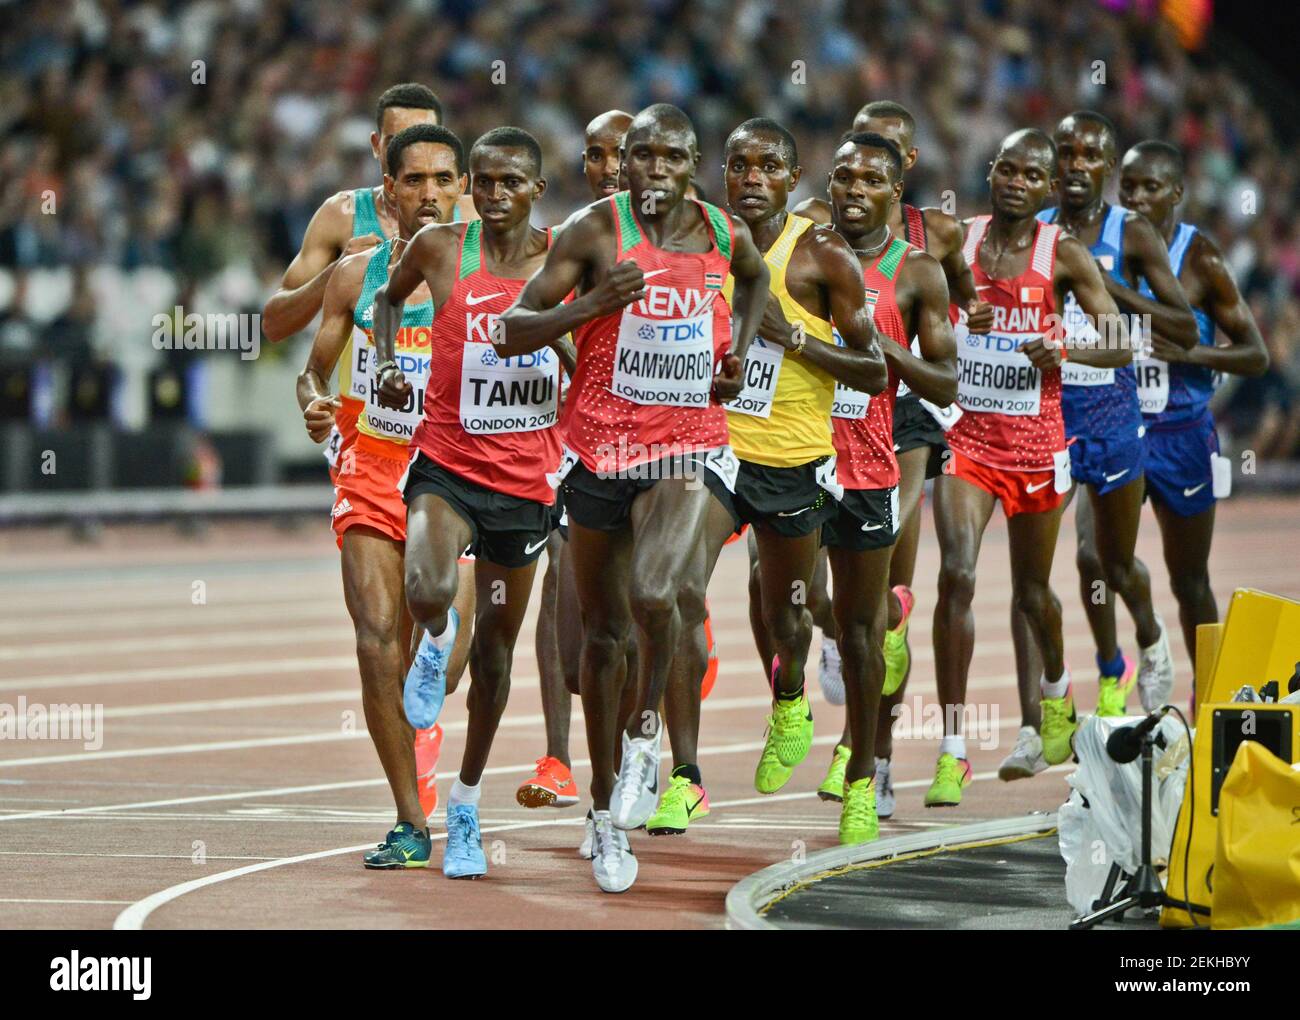 Atletas kenianos Geoffrey Kamworor, Paul Kipngetich Tanui (Medalla de Bronce). 10000 metros hombres - Campeonato Mundial de la IAAF Londres 2017 Foto de stock